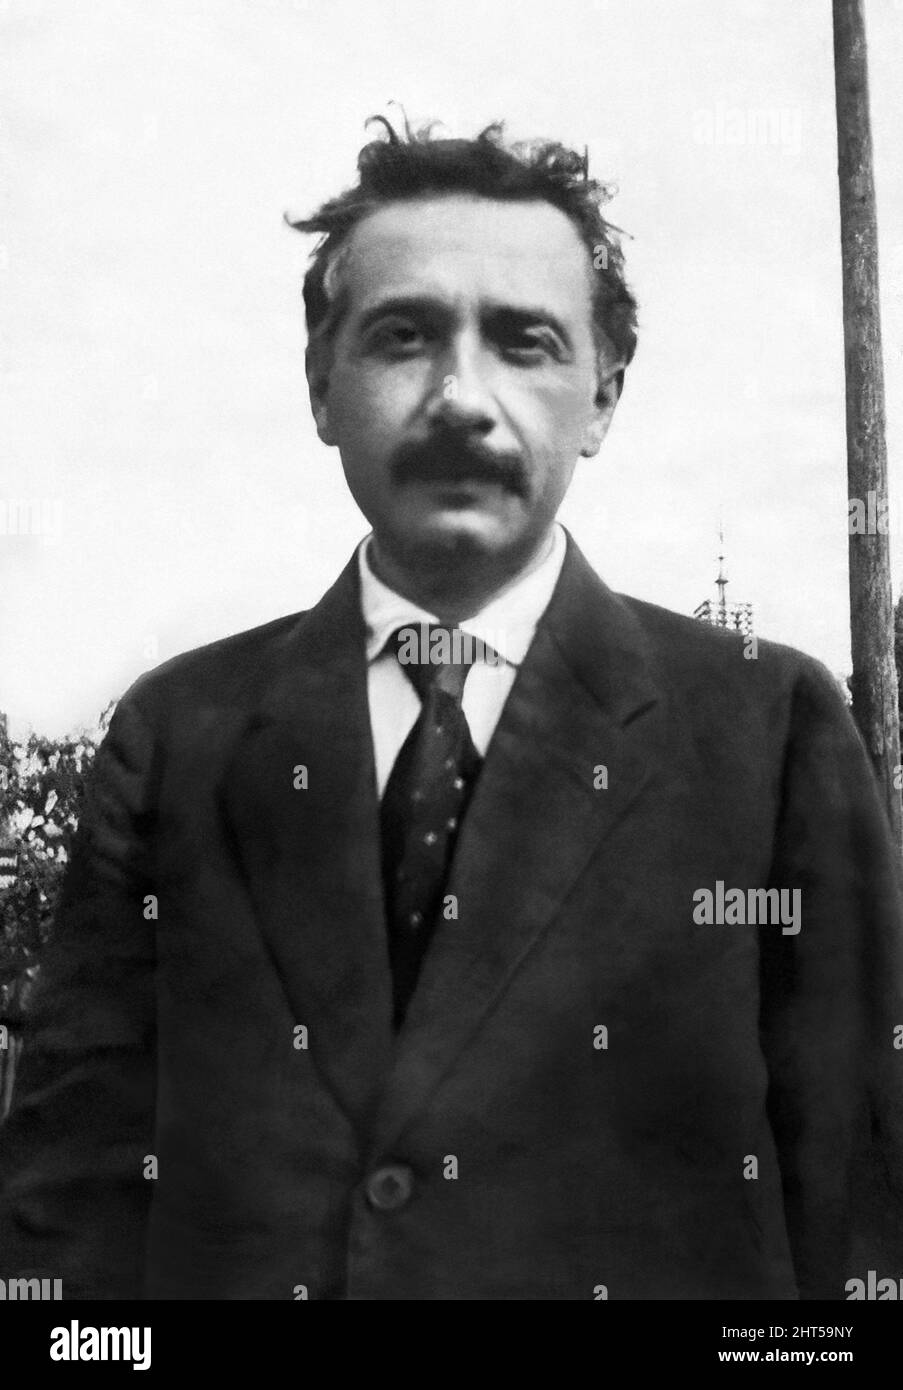 Albert Einstein (1879-1955), fisico teorico tedesco che sviluppò la teoria della relatività e riceverebbe il Premio Nobel per la fisica 1921, in un ritratto all'aperto c1919. Foto Stock